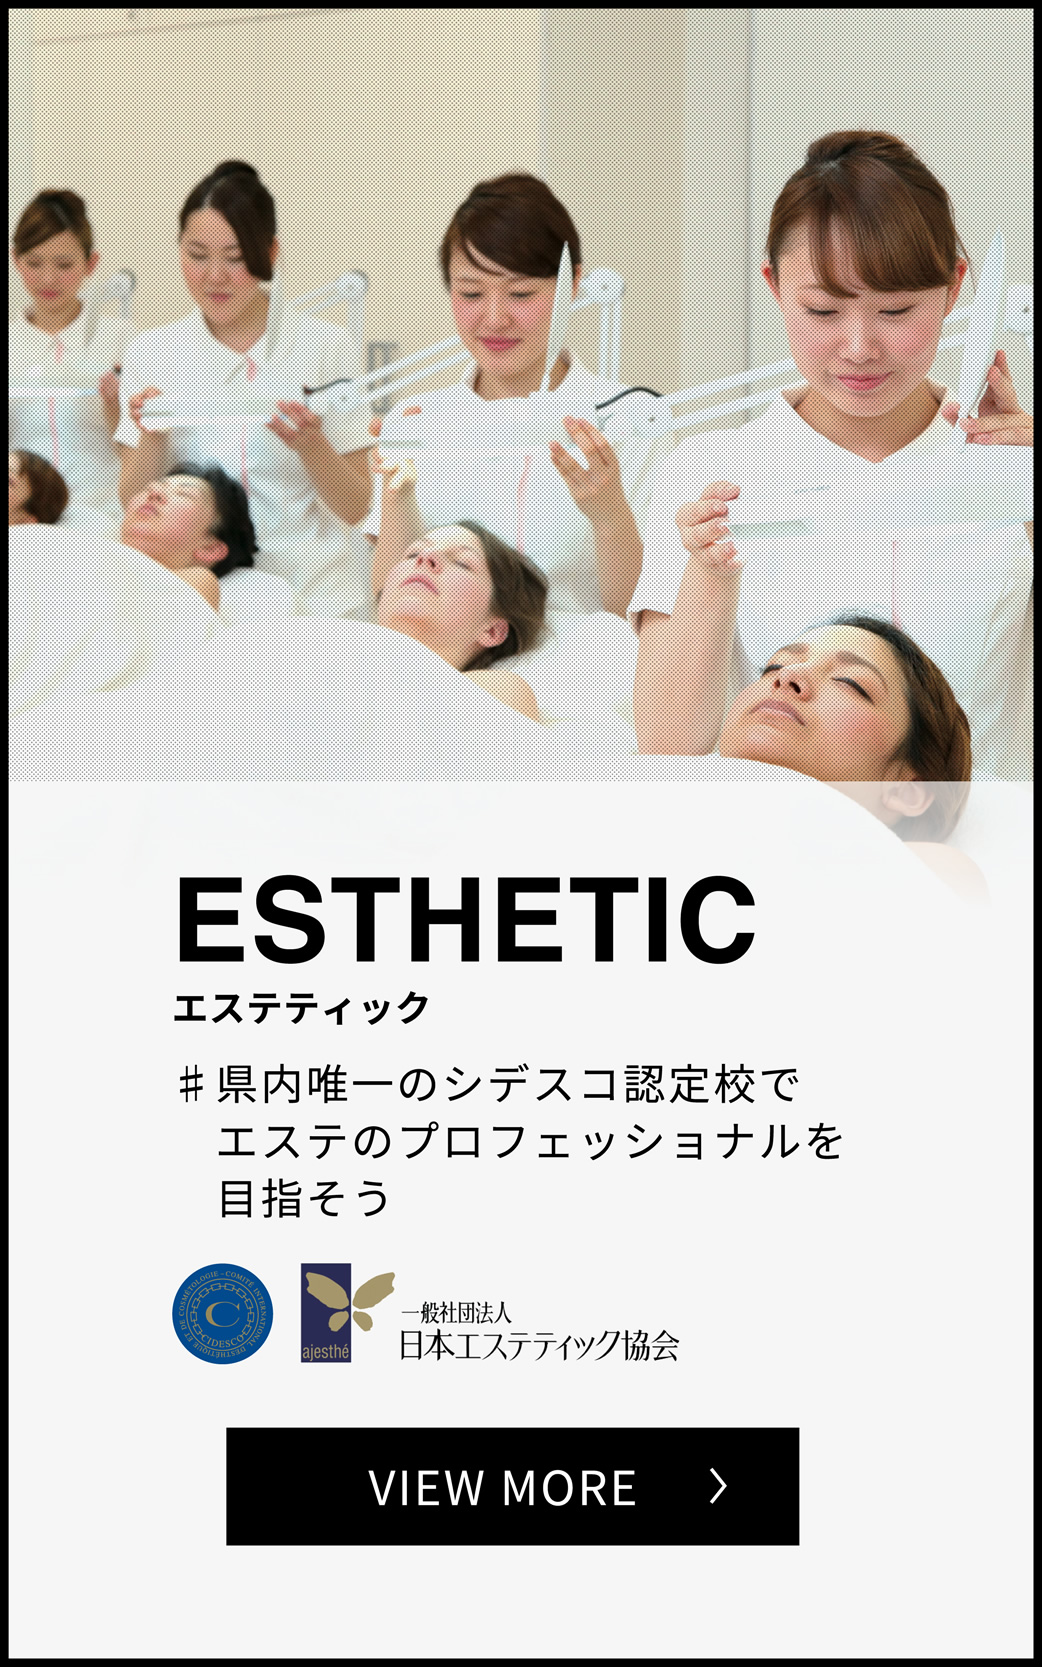 ESTHETIC エステティック 県内唯一のシデスコ認定校でエステのプロフェッショナルを目指そう